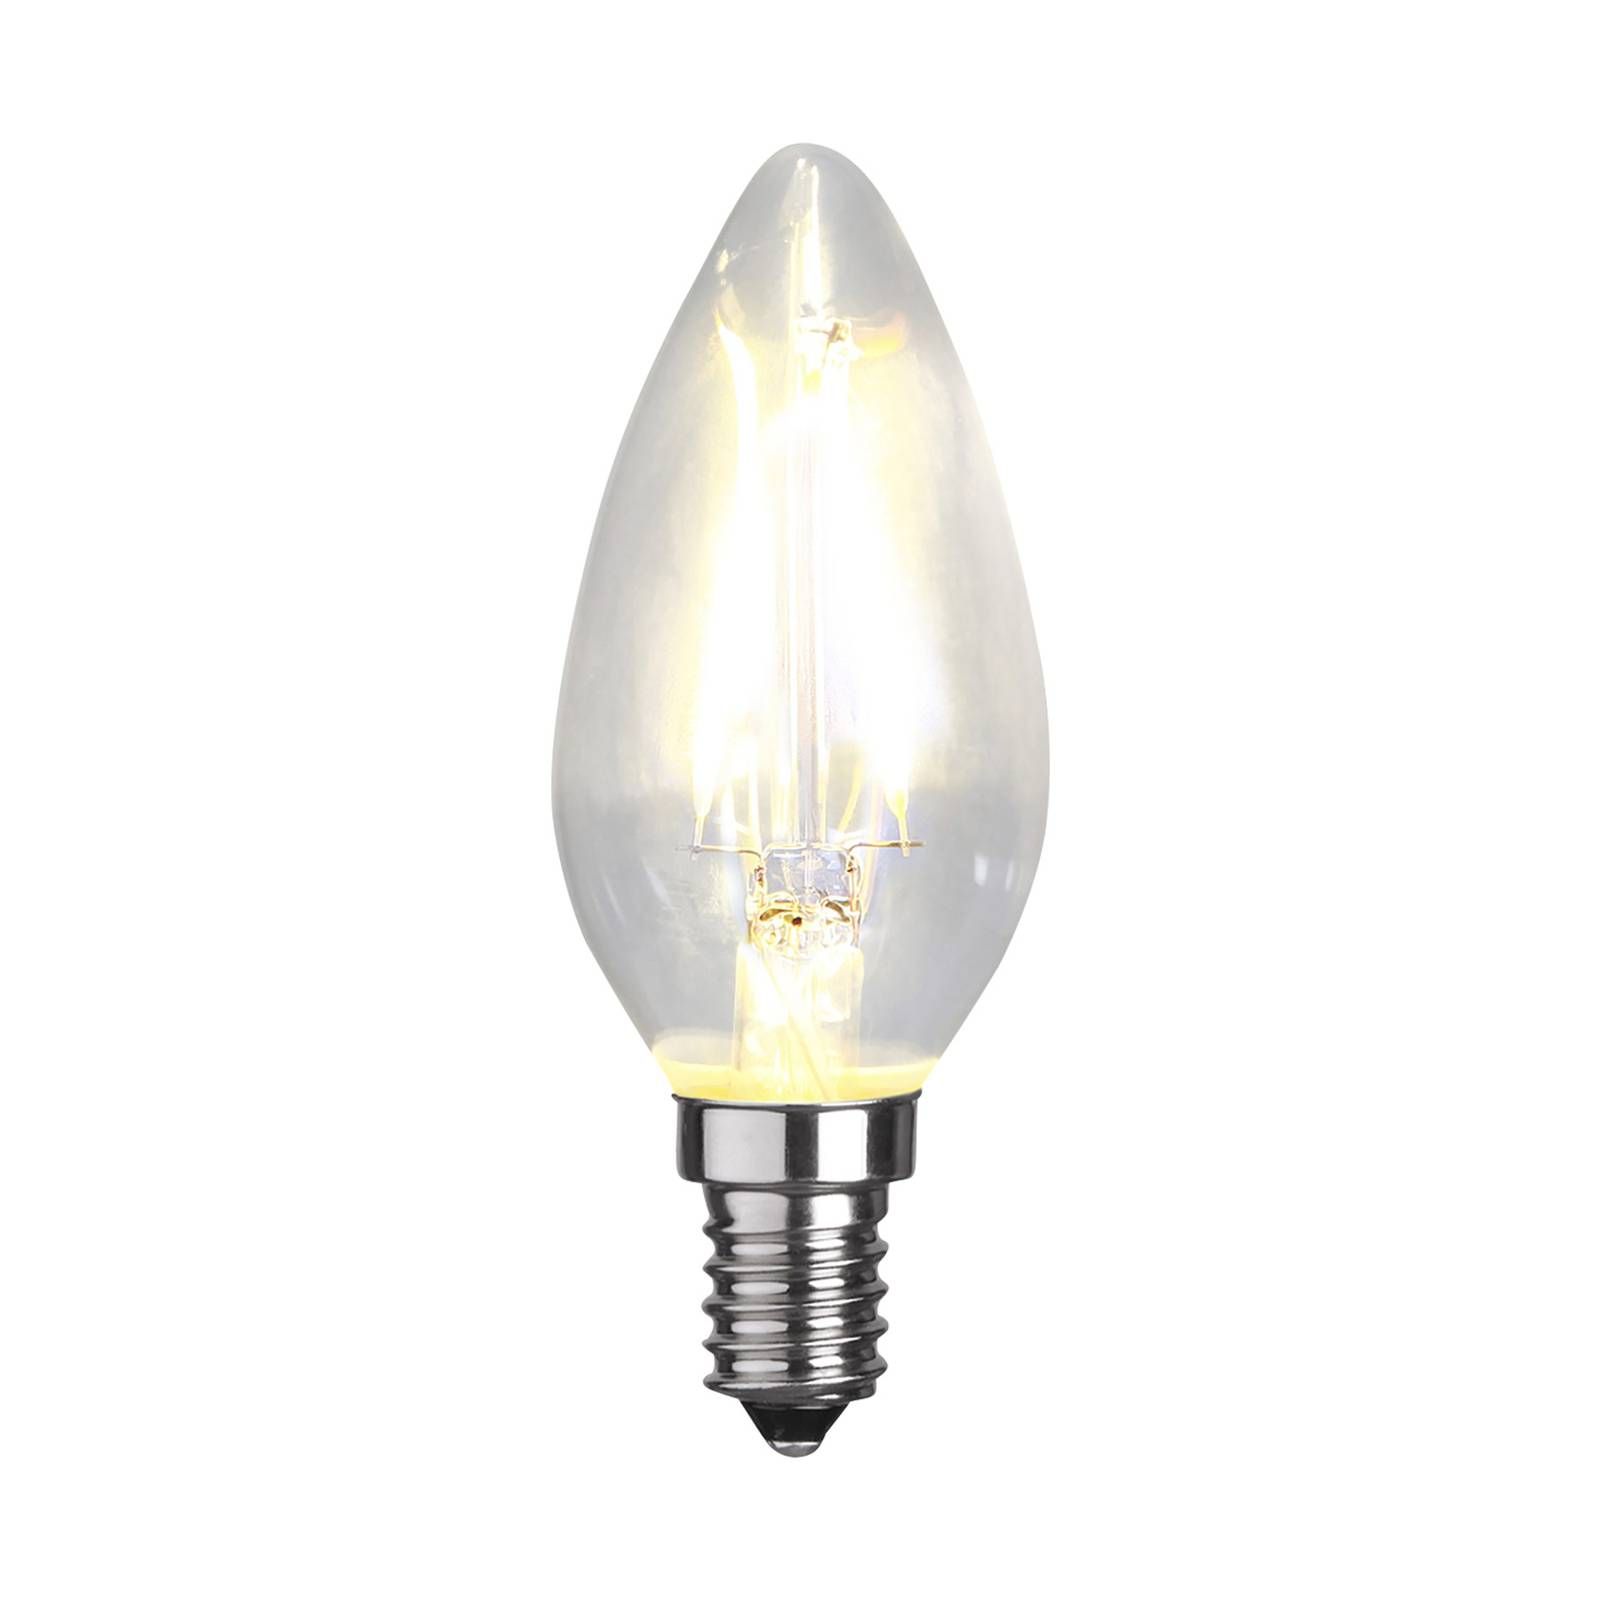 STAR TRADING Sviečková LED žiarovka C35 filament E14 1, 5W 2700K, E14, 1.5W, Energialuokka: F, P: 9.5 cm